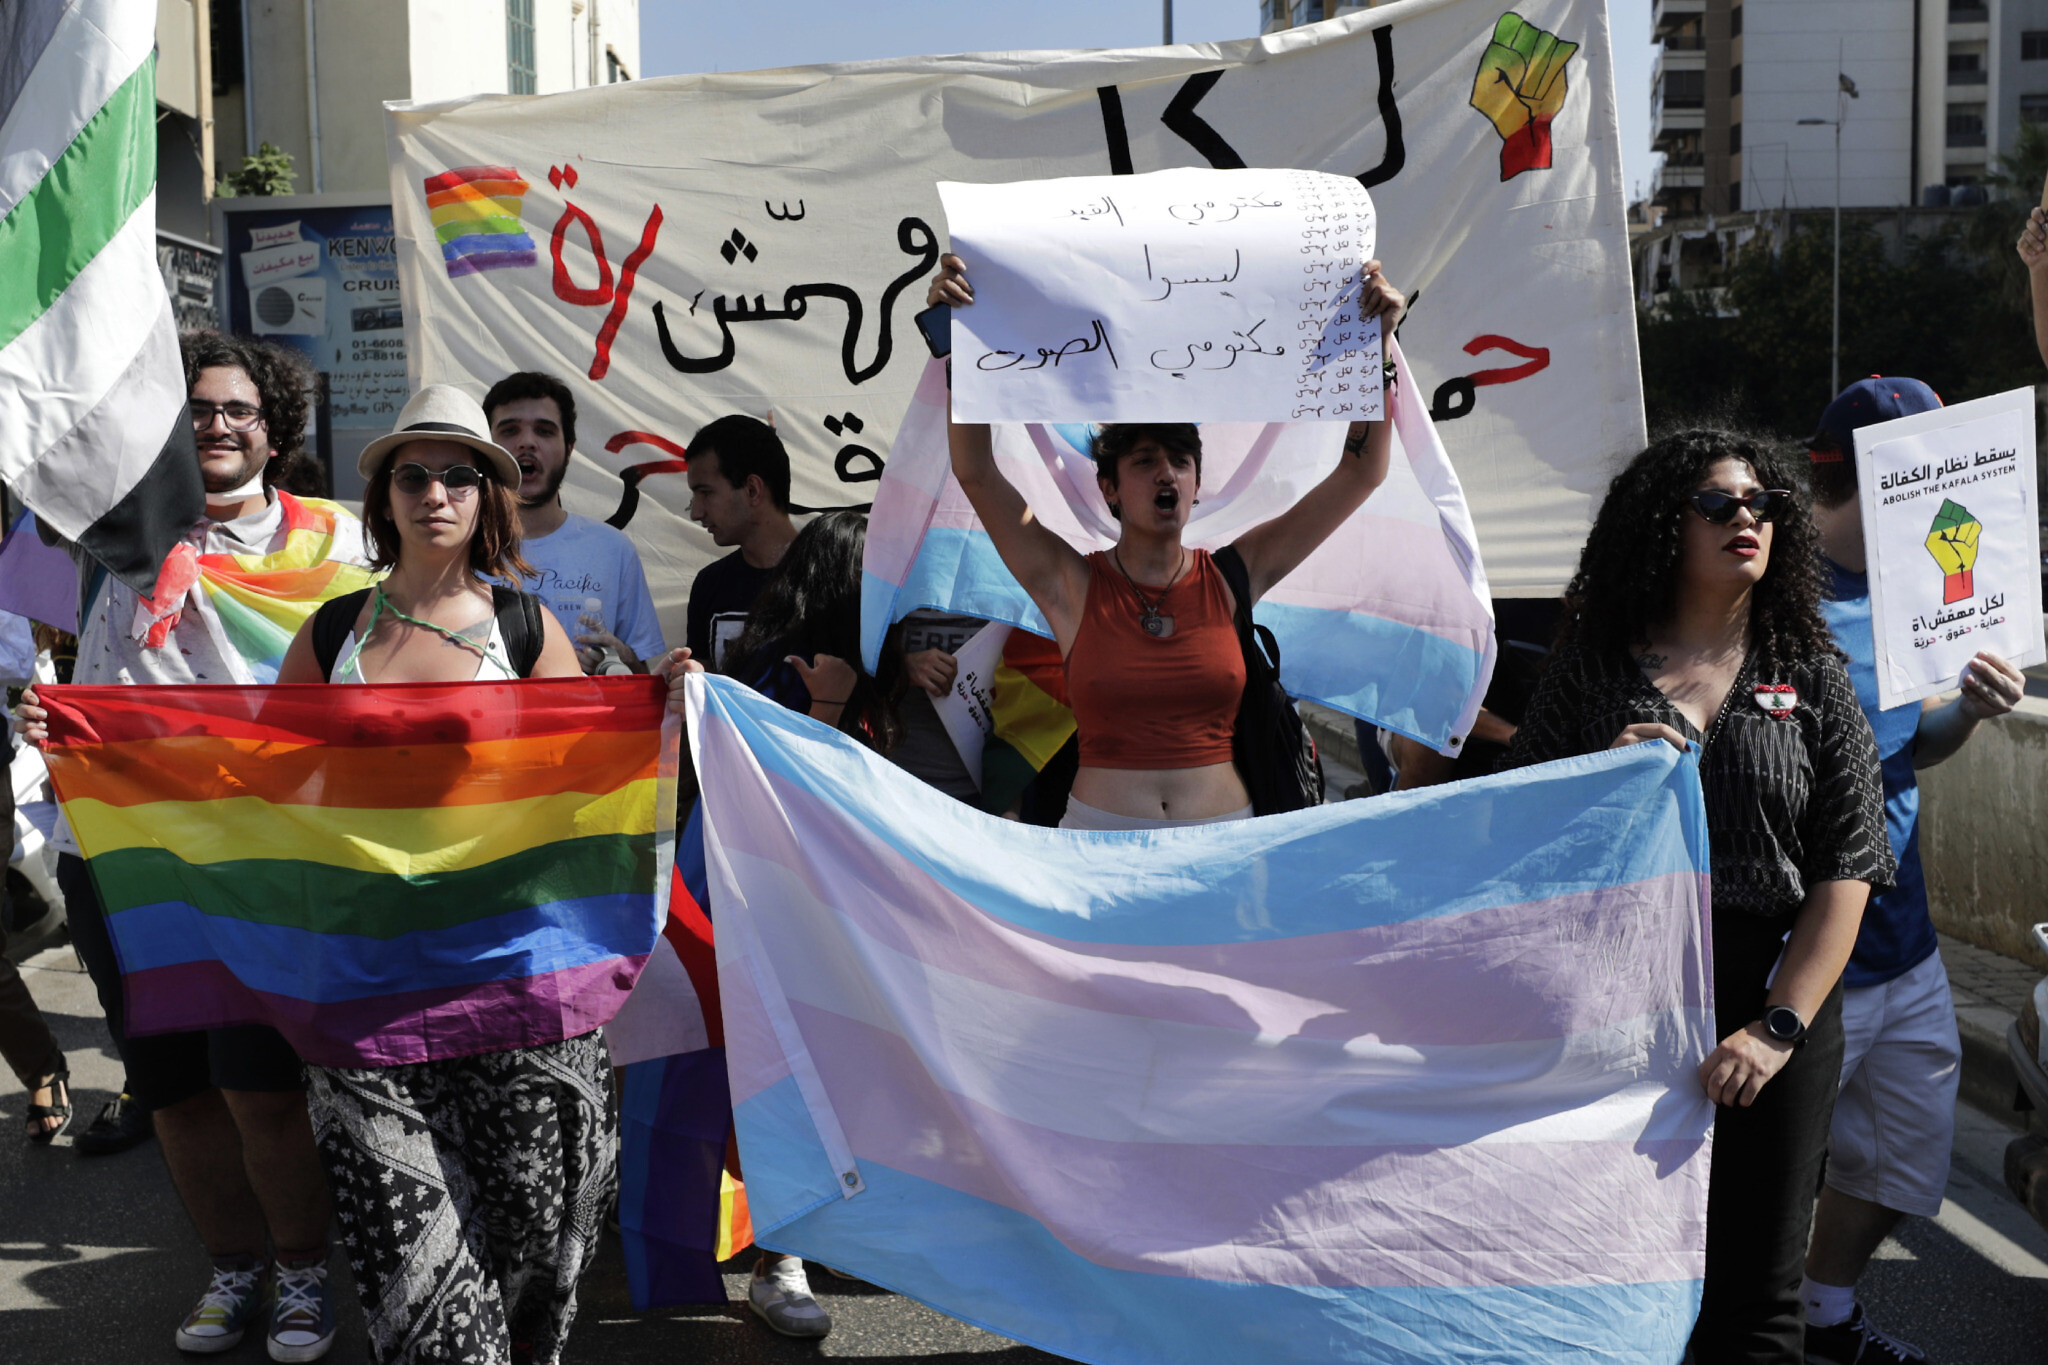 Lübnan’da (kuir) ekonomik özgürleşmeyi serbest bırakmak | Kaos GL - LGBTİ+ Haber Portalı Haber